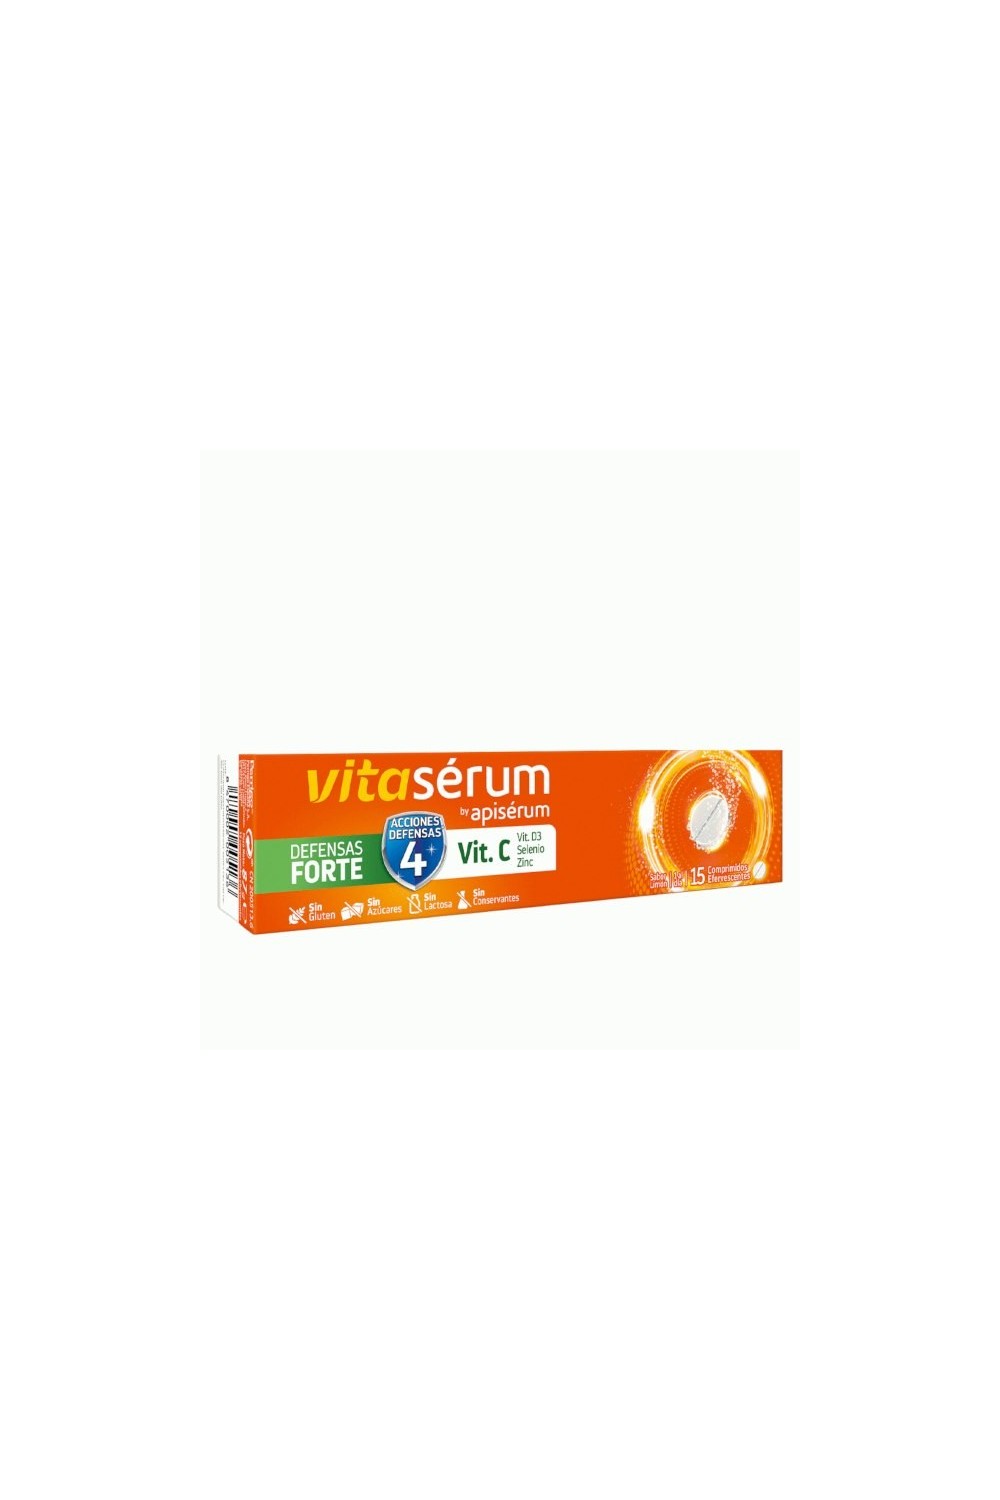 Vitaserum By Apiserum Defensas Forte Vit C 15 Tablets